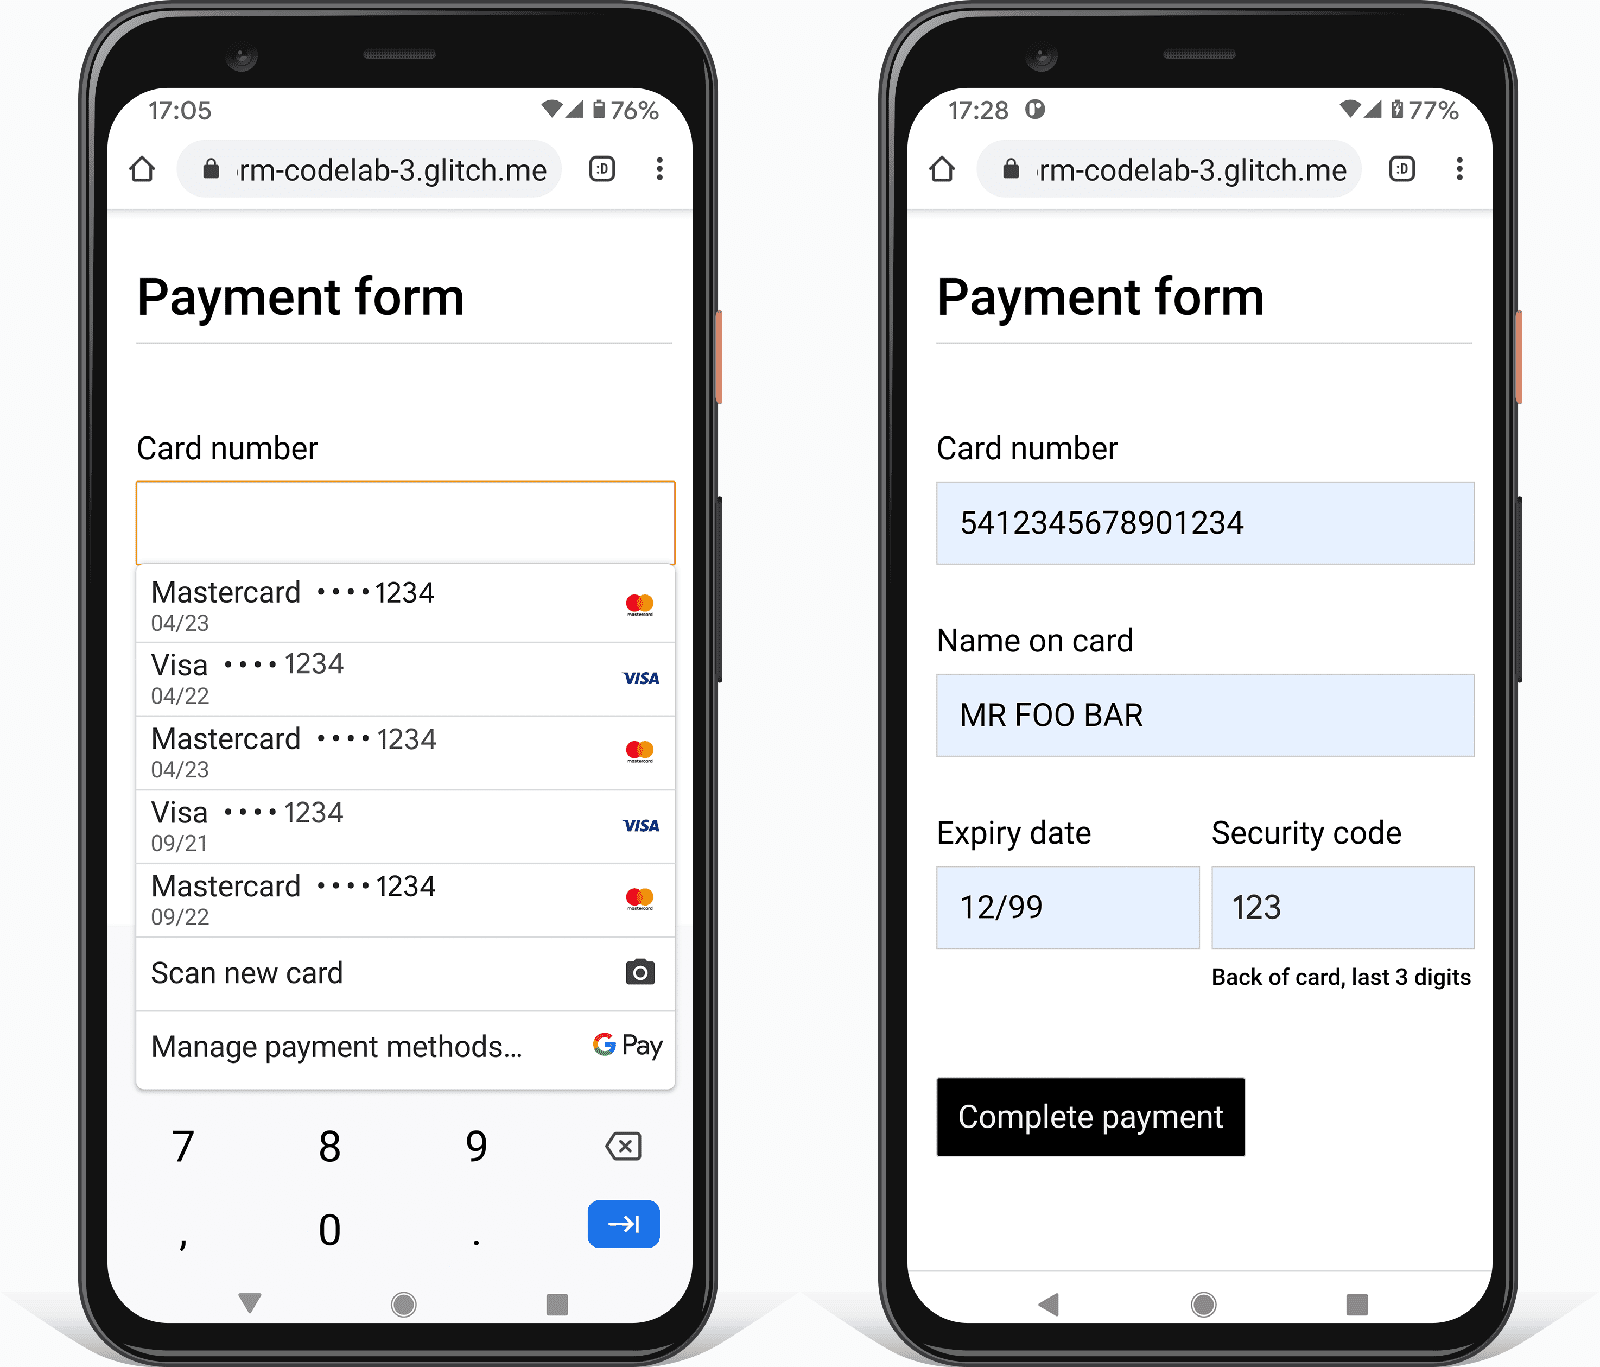 ภาพหน้าจอ 2 ภาพแสดงแบบฟอร์มการชำระเงินใน Chrome บนโทรศัพท์ Android รายการหนึ่งแสดงตัวเลือกบัตรสำหรับชำระเงินของเบราว์เซอร์ที่มีในตัว ส่วนอีกเครื่องแสดงค่าตัวยึดตำแหน่งที่ป้อนอัตโนมัติ